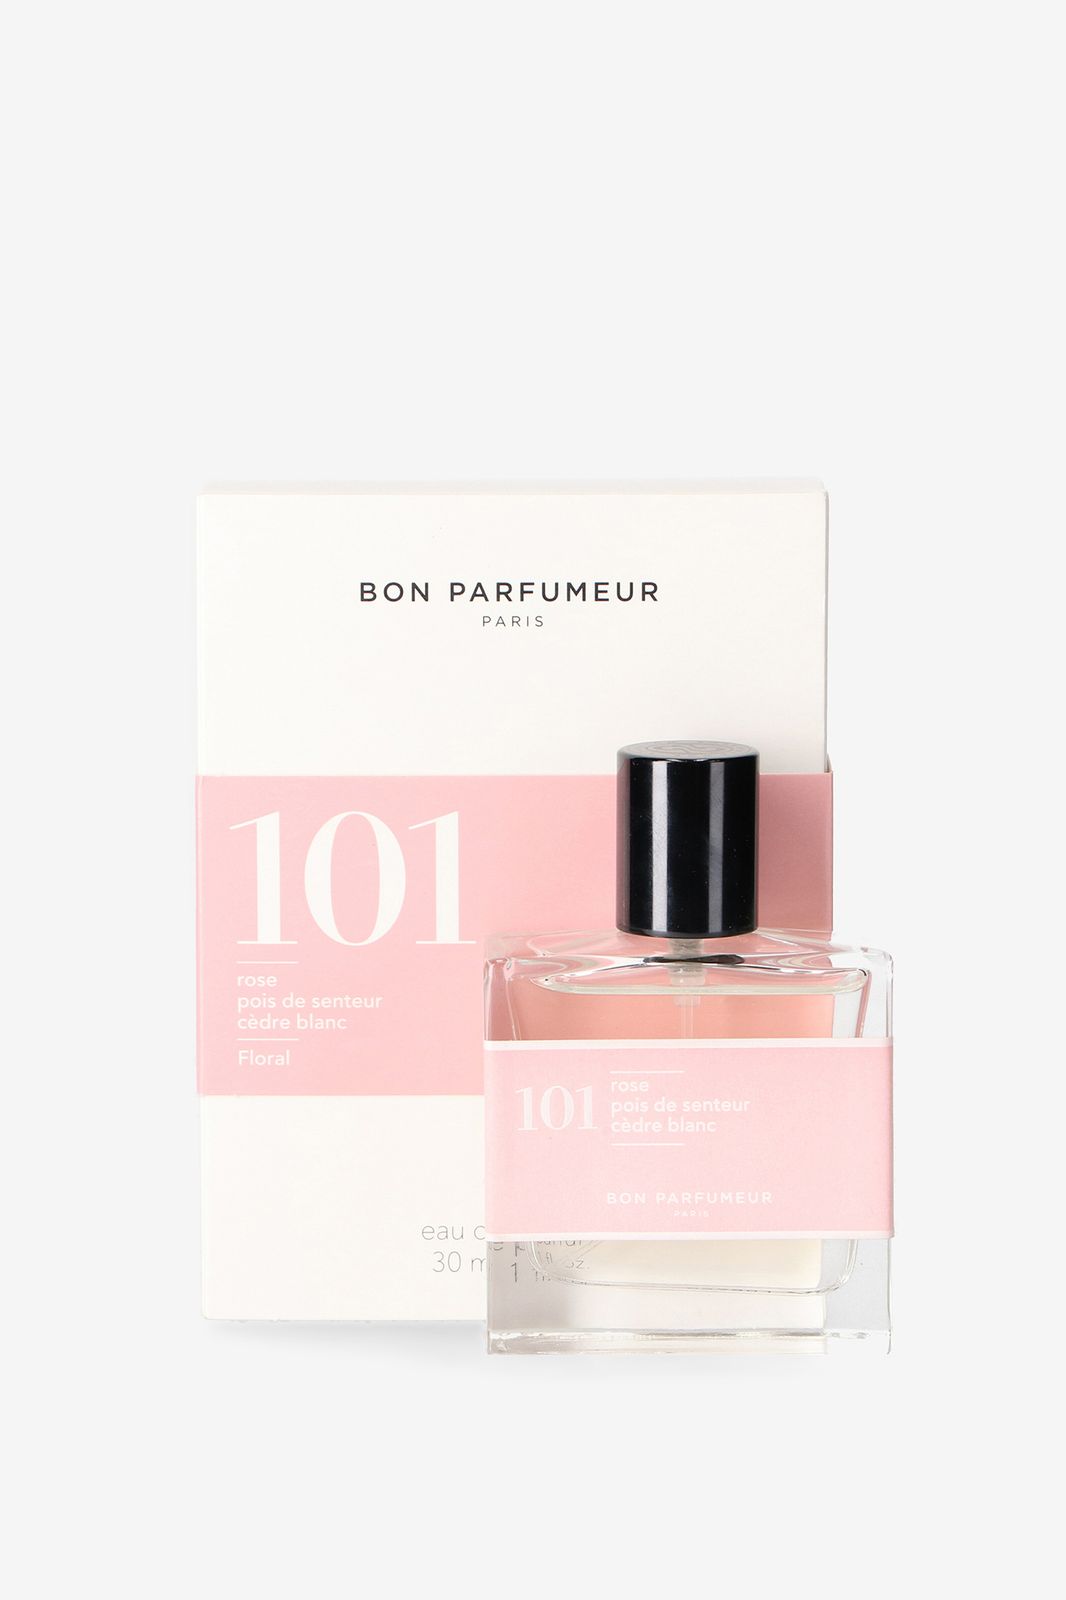 Bon parfumeur 101: rose / sweet pea / white cedar